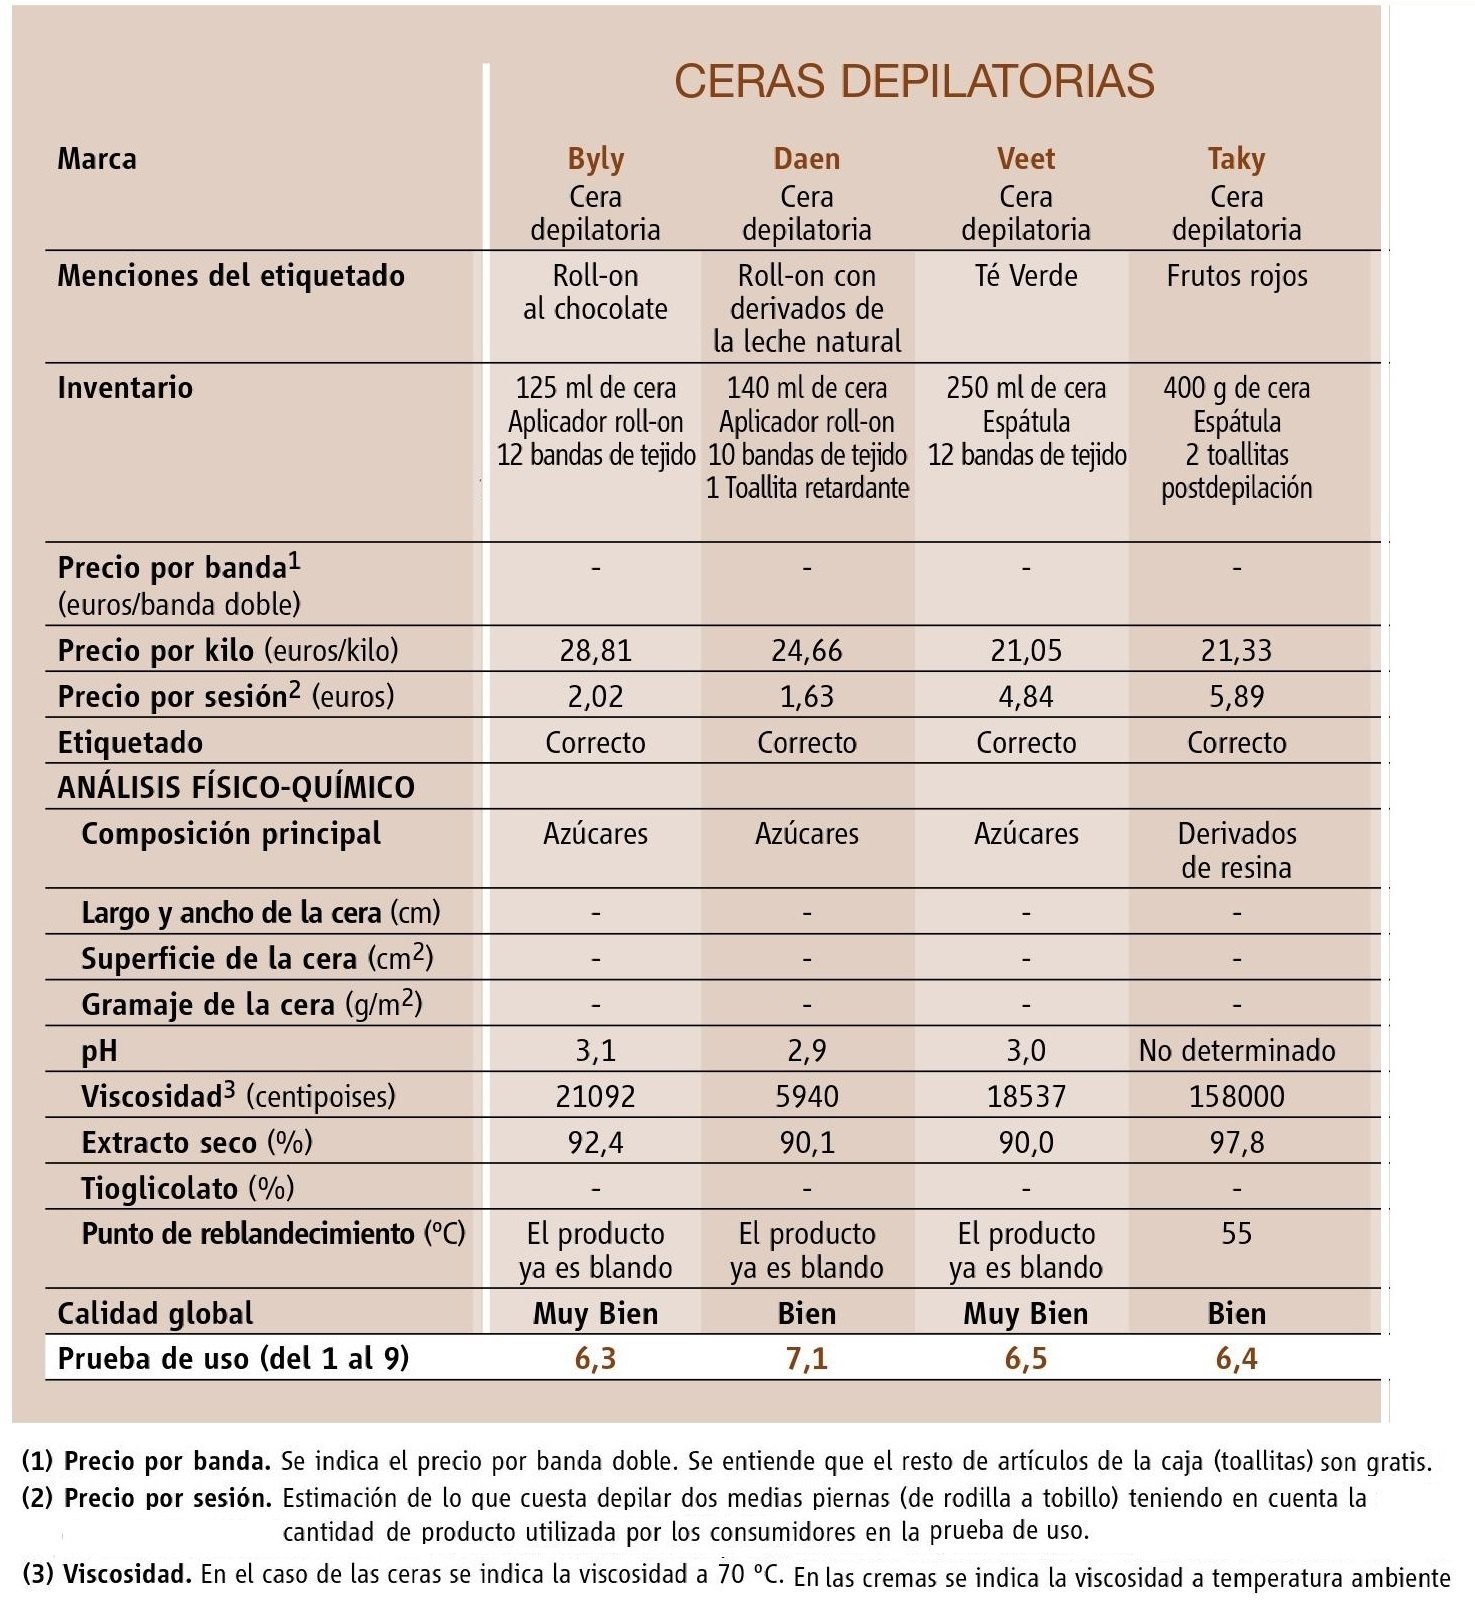 comparativa-ceras-depilatorias